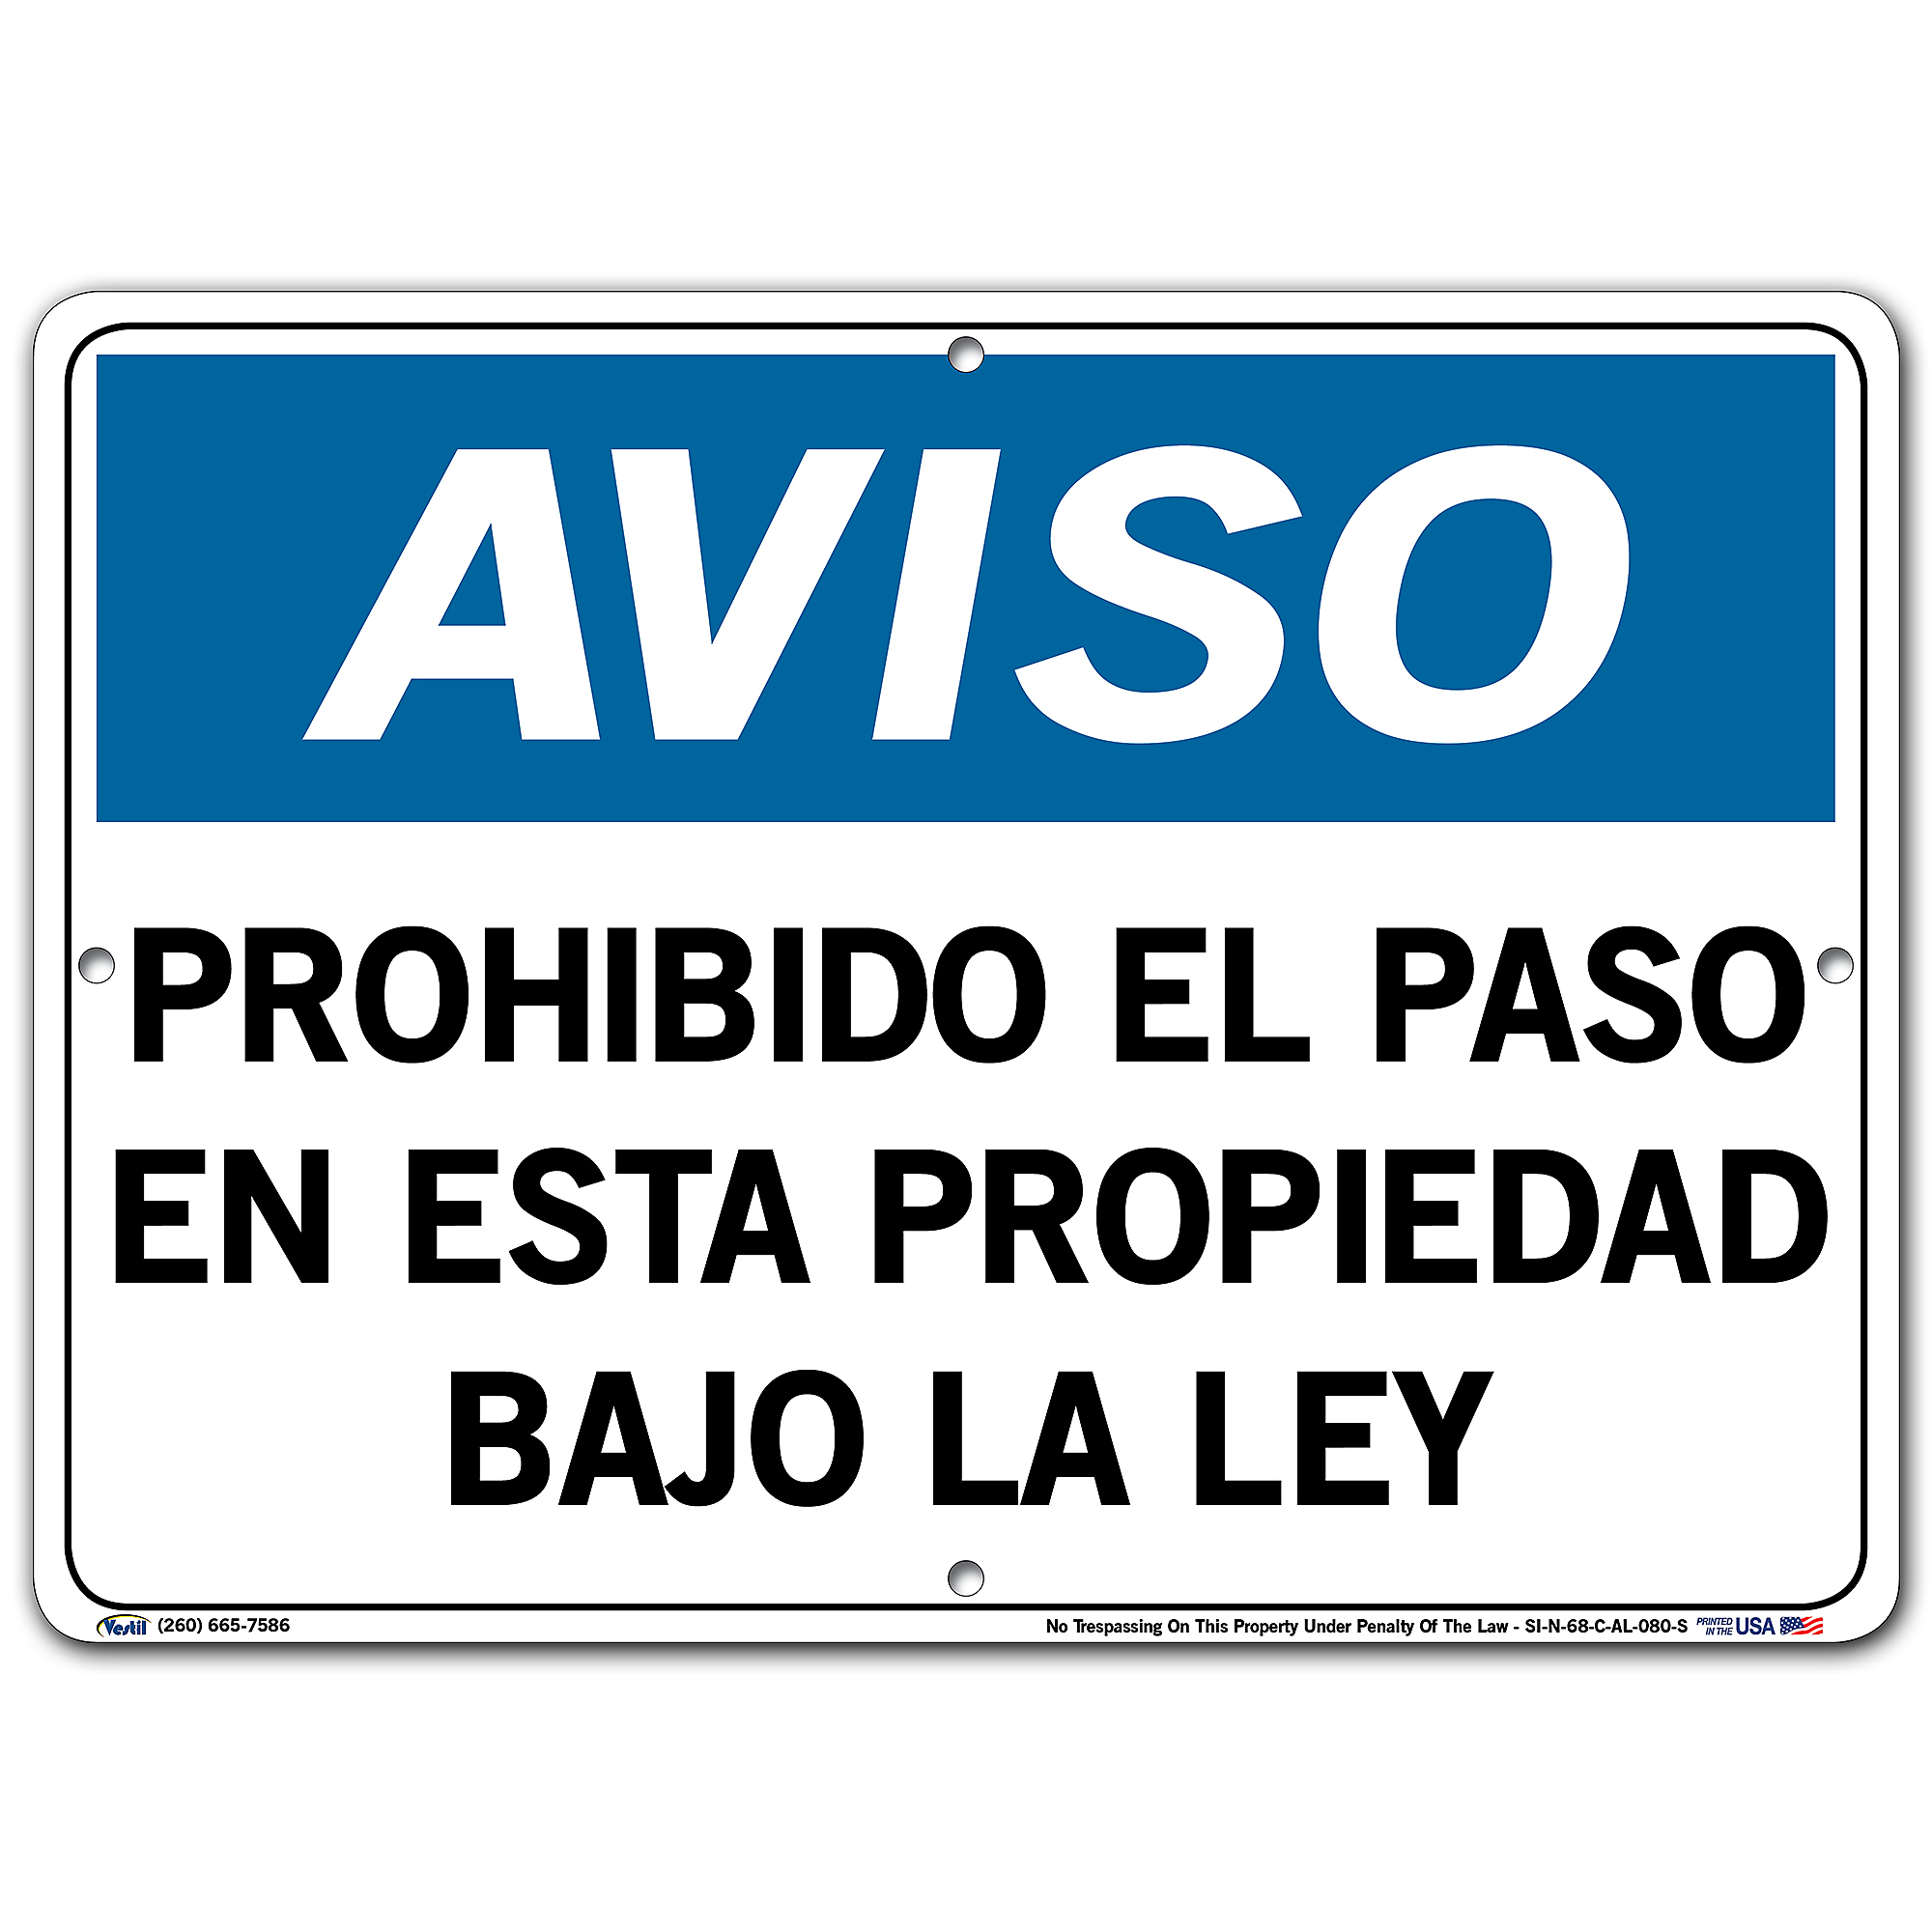 Vestil, Notice Sign (Spanish/Espanol) - Aluminum, Sign Message PROHIBIDO EL PASO EN ESTA PROPIEDAD BAJO LA LEY, Height 10.5 in, Width 2 in, Model SI-N -  SI-N-68-C-AL-080-S